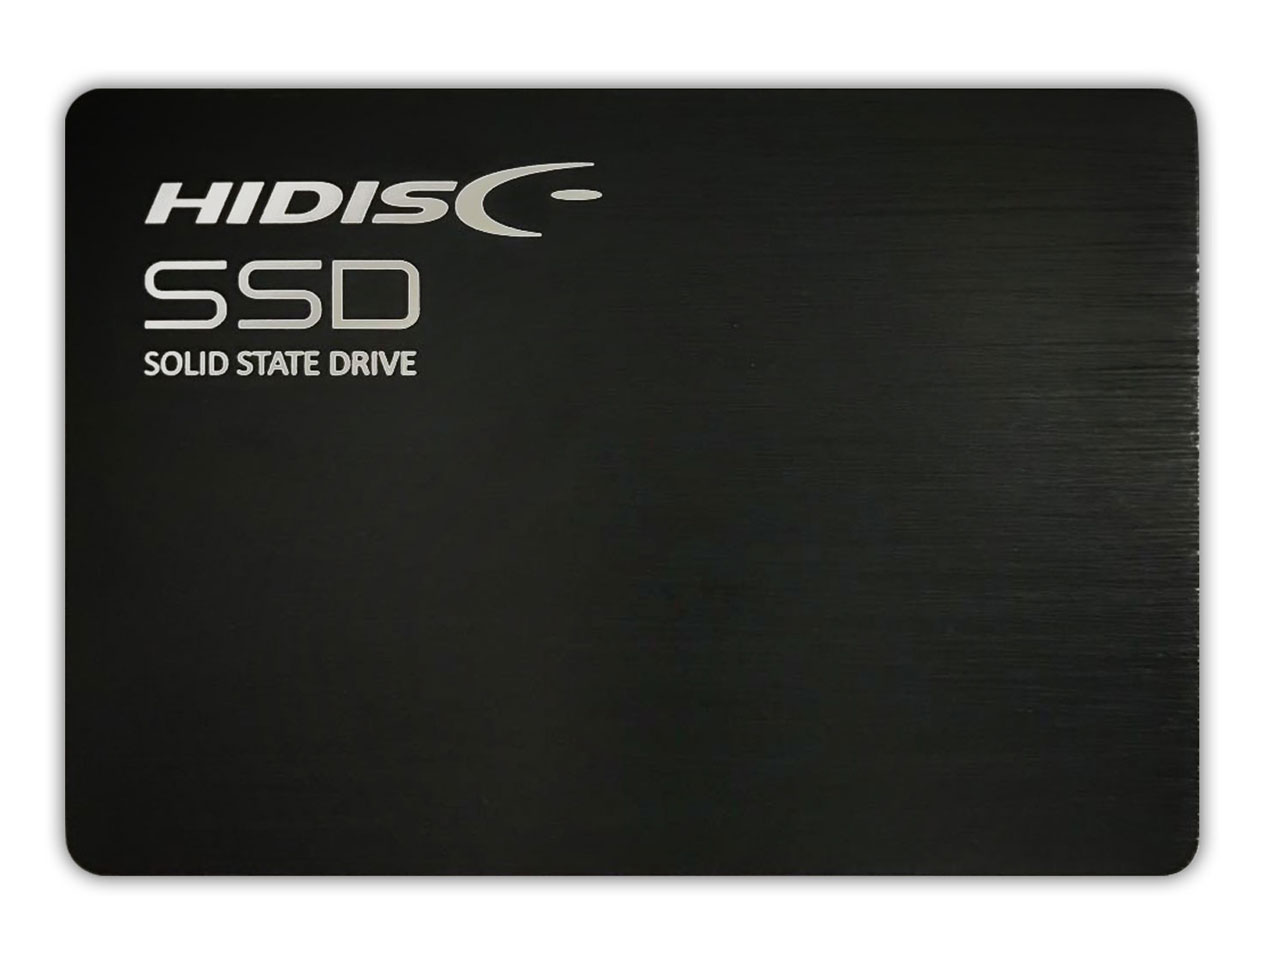 価格.com - HDSSD480GJP3 の製品画像